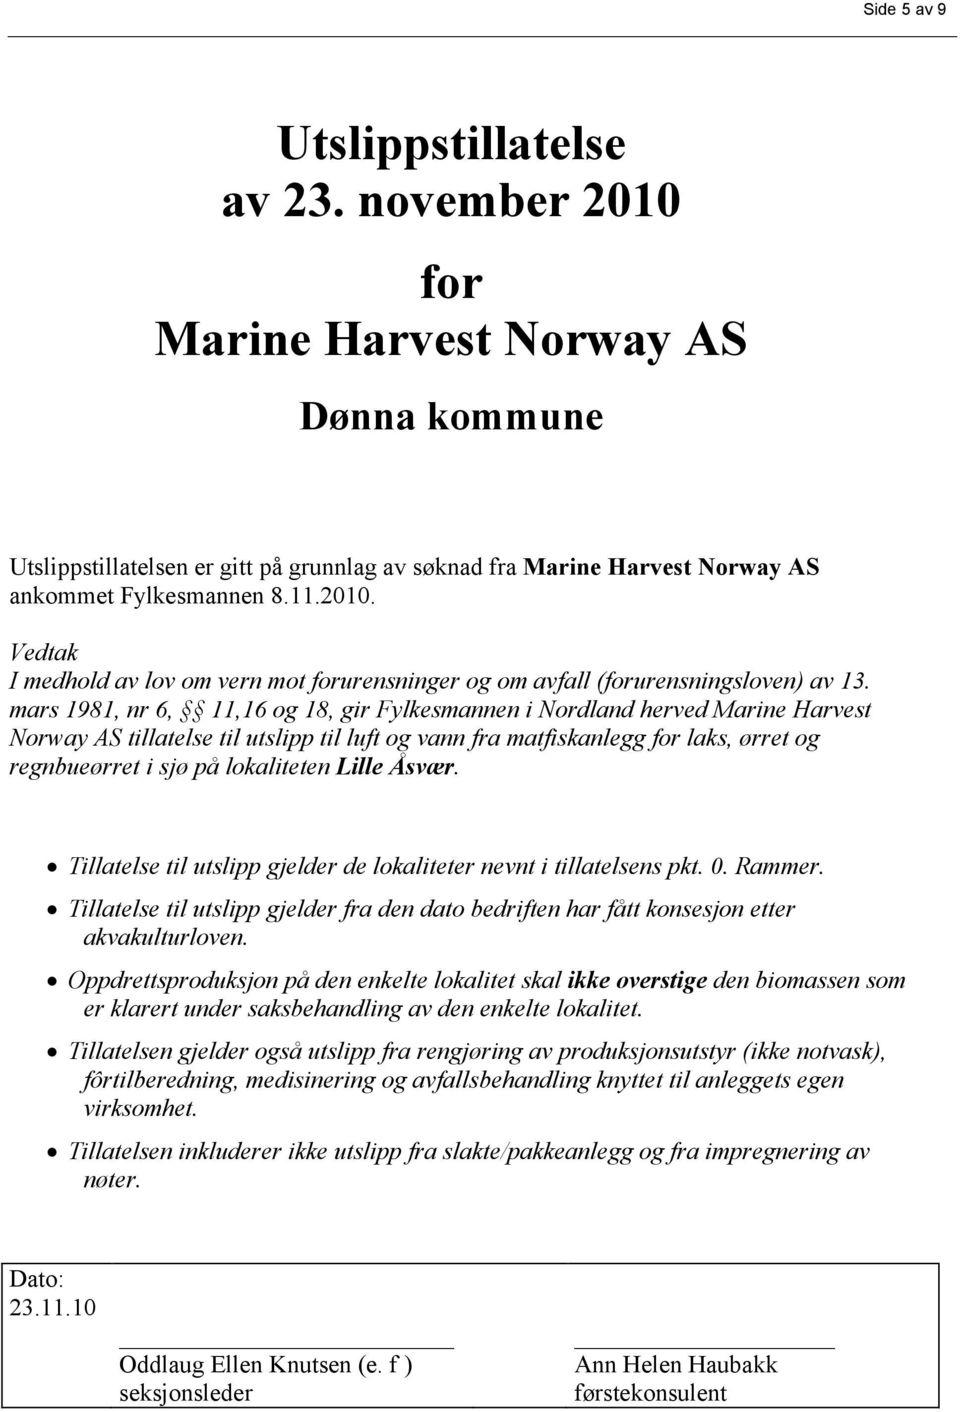 mars 1981, nr 6, 11,16 og 18, gir Fylkesmannen i Nordland herved Marine Harvest Norway AS tillatelse til utslipp til luft og vann fra matfiskanlegg for laks, ørret og regnbueørret i sjø på